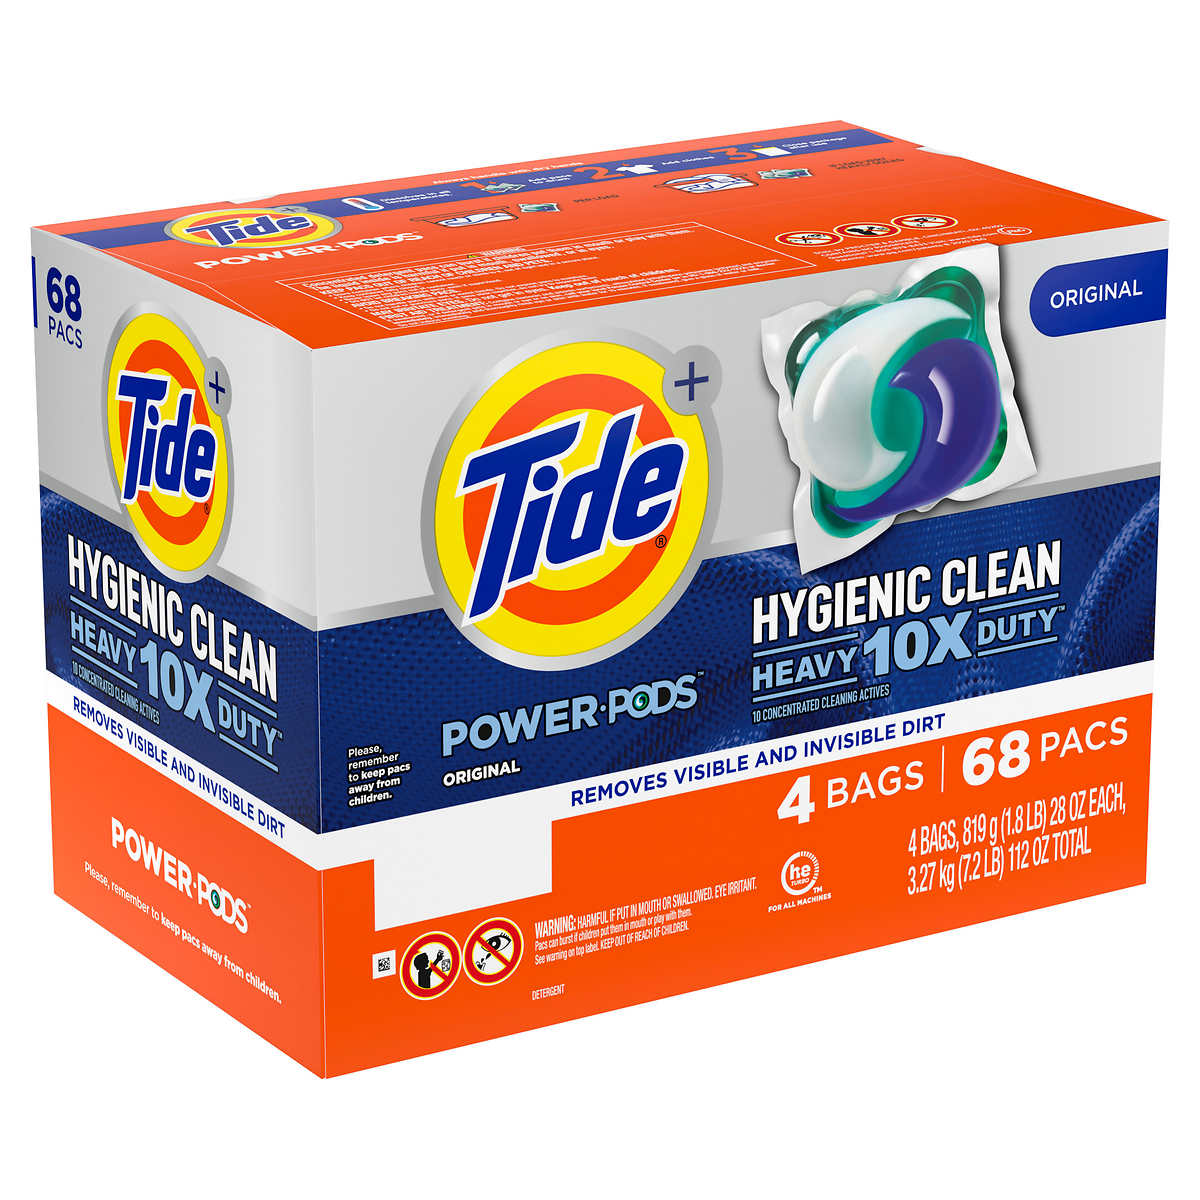 1 Thùng Viên Giặt Tide Power PODS Hygienic Clean Detergent Mỹ - 68 viên